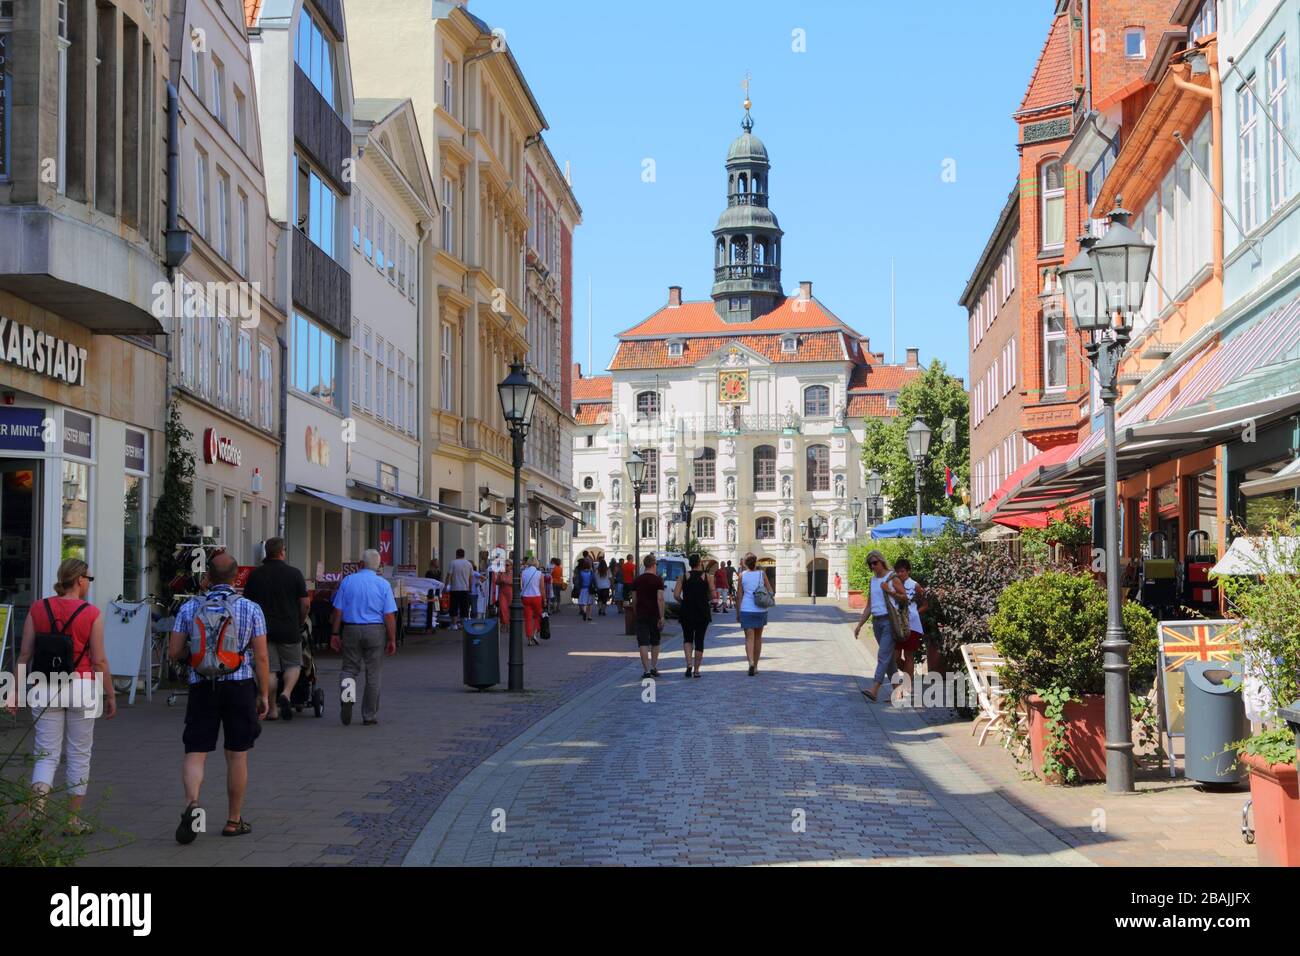 Lüneburgisch, Deutschland - 23. Juli 2013: Einkaufsstraße in der Altstadt von Lübeck. Im Hintergrund ist das Rathaus zu sehen. Die Besucher sind Einheimische B. Stockfoto